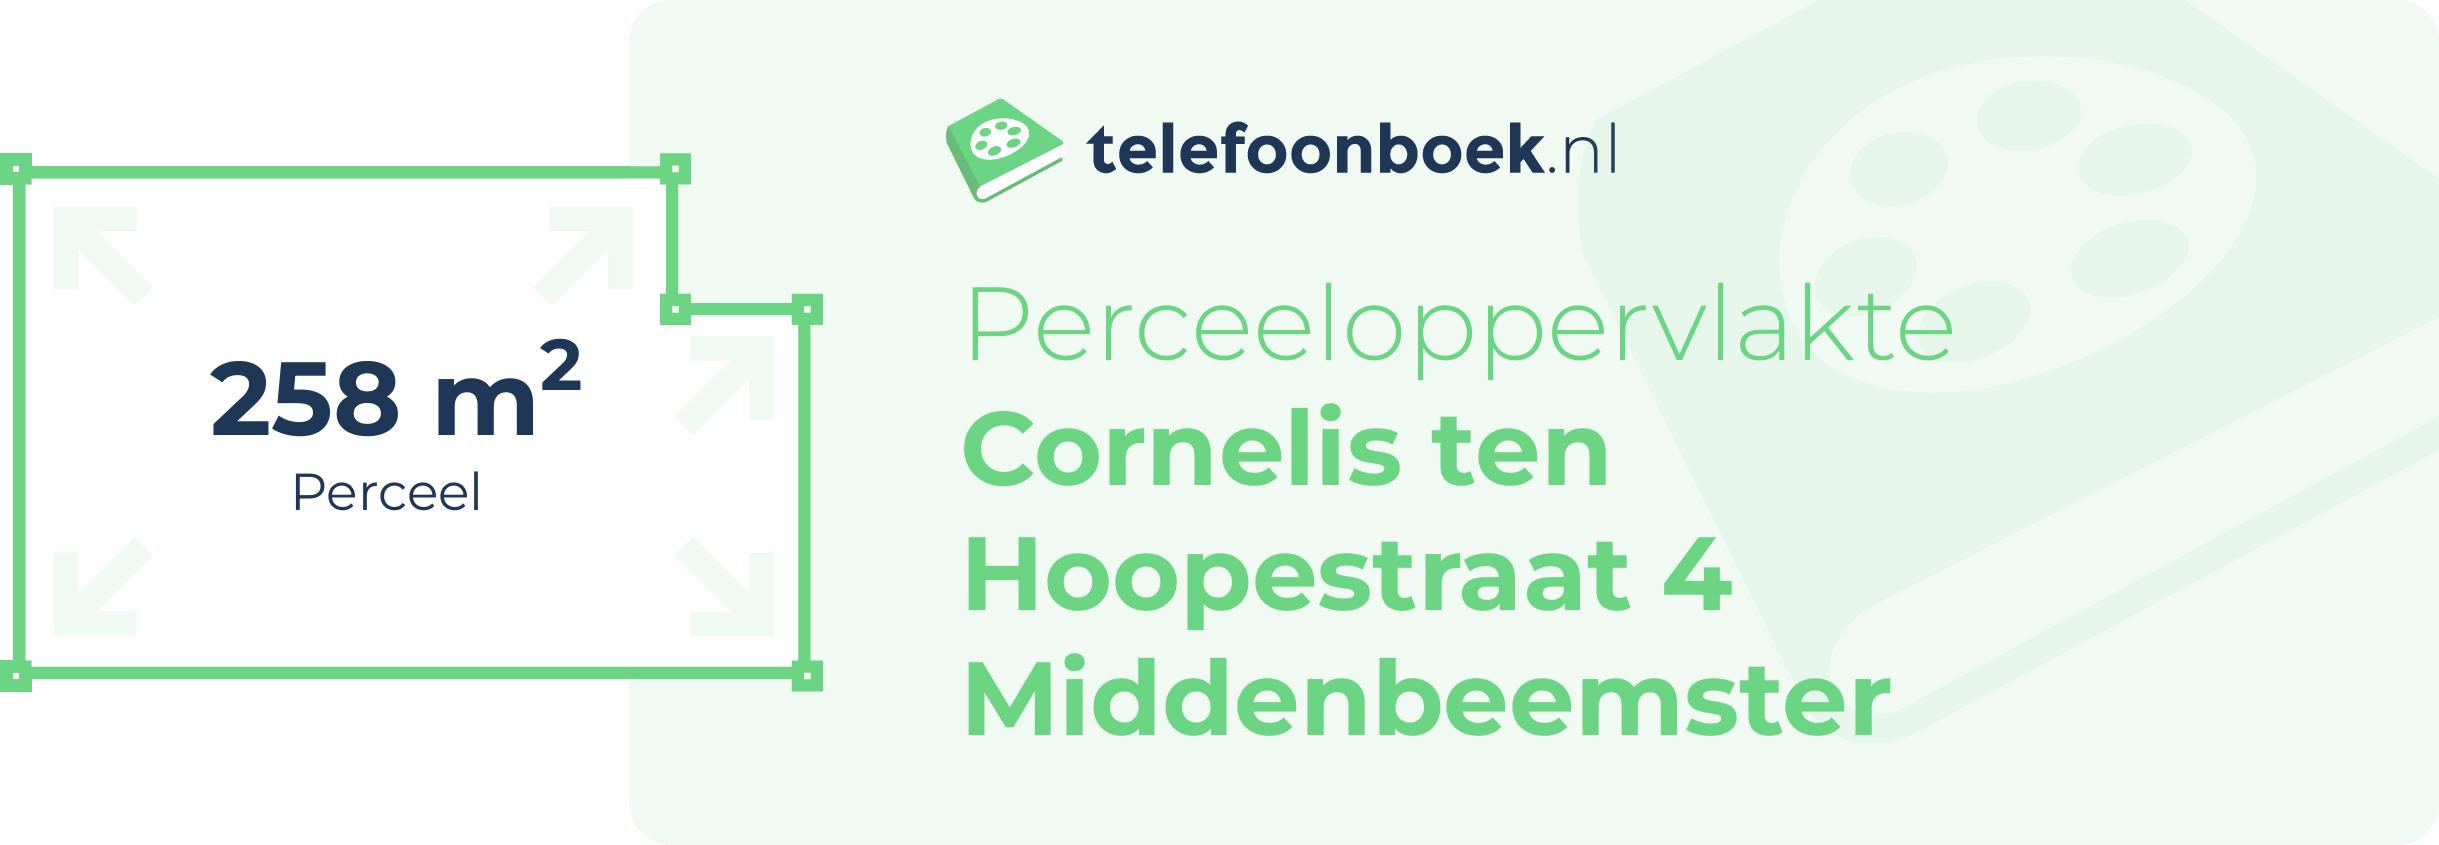 Perceeloppervlakte Cornelis Ten Hoopestraat 4 Middenbeemster